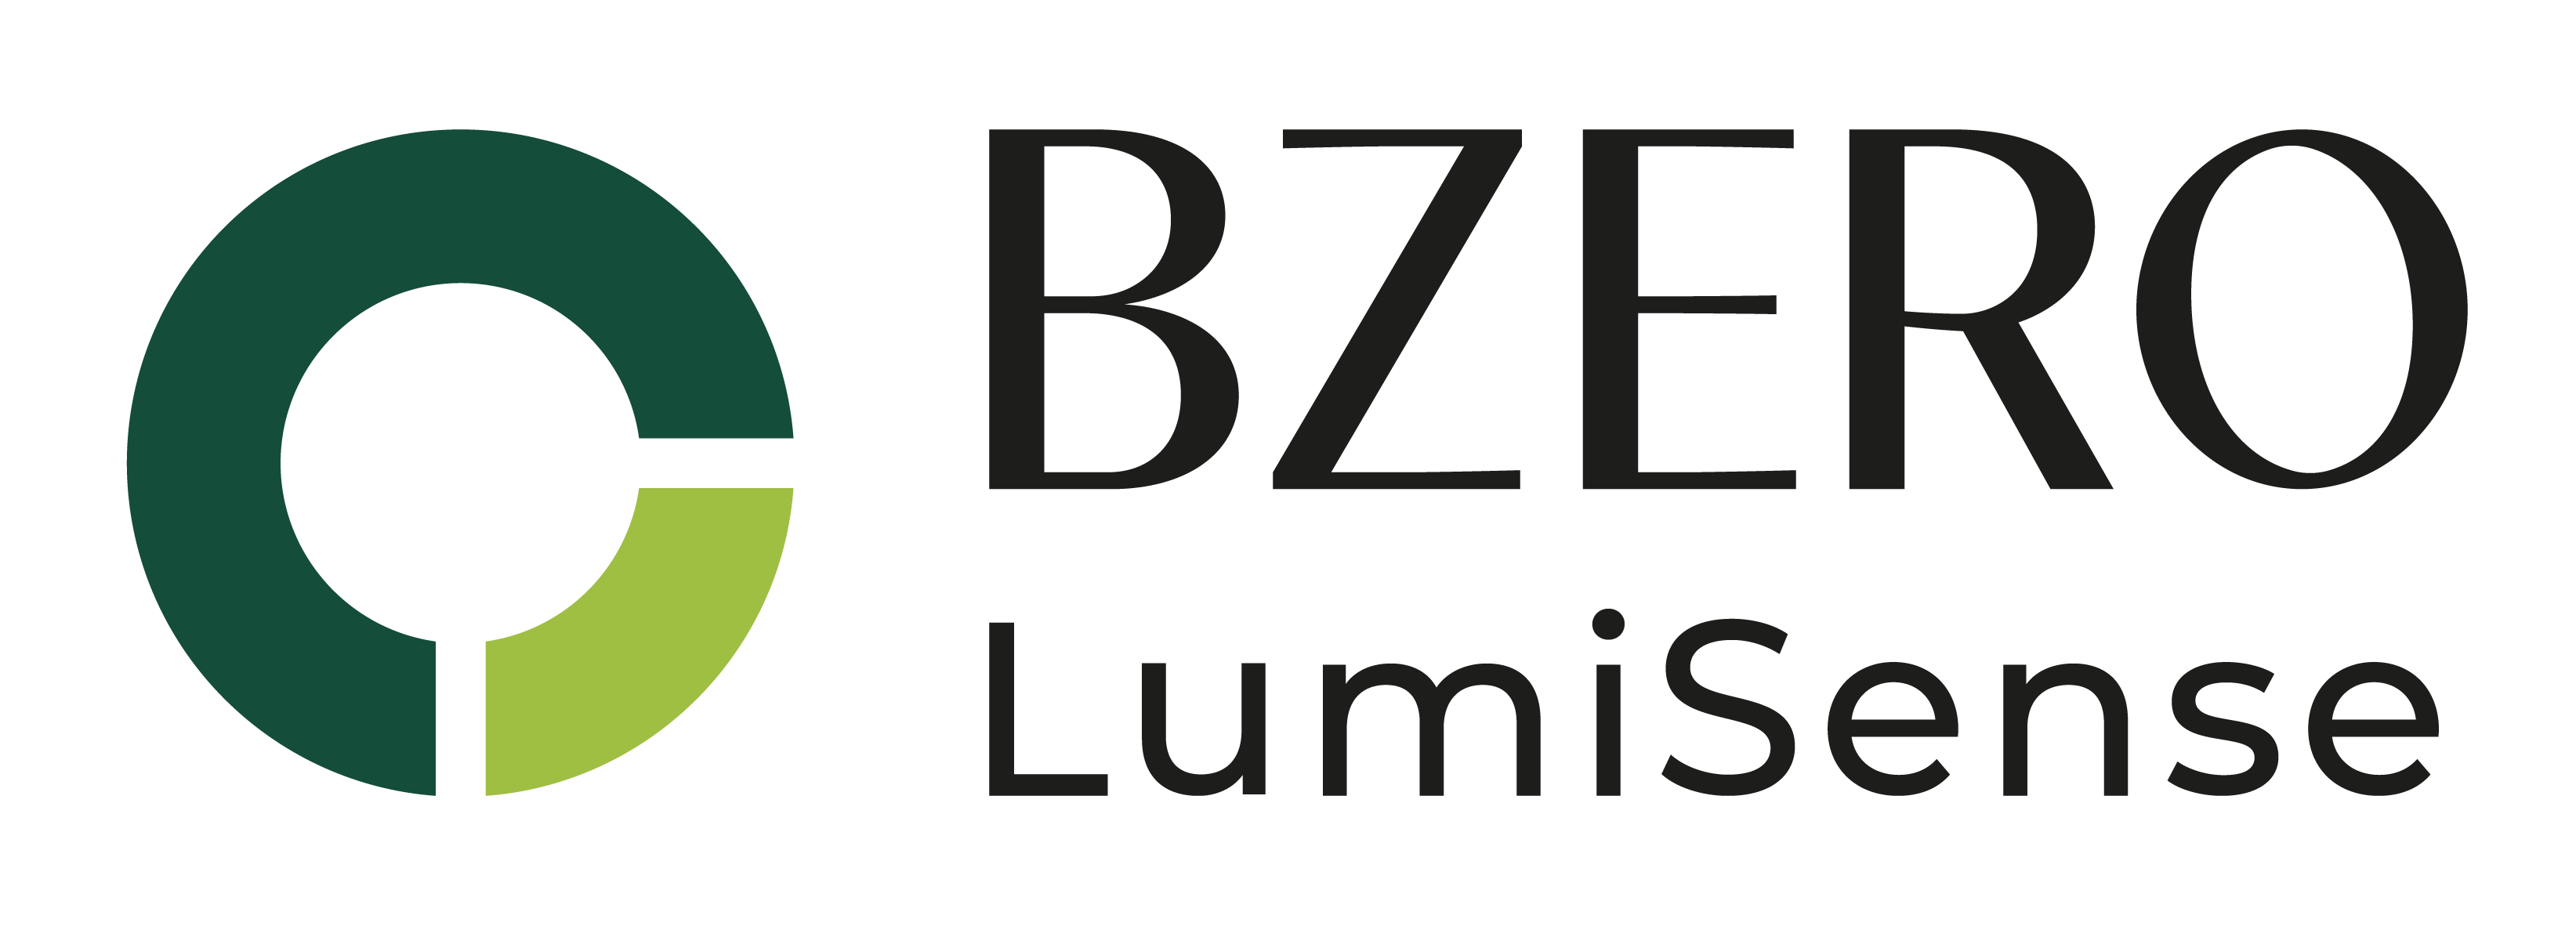 Bzero LumiSense Logo